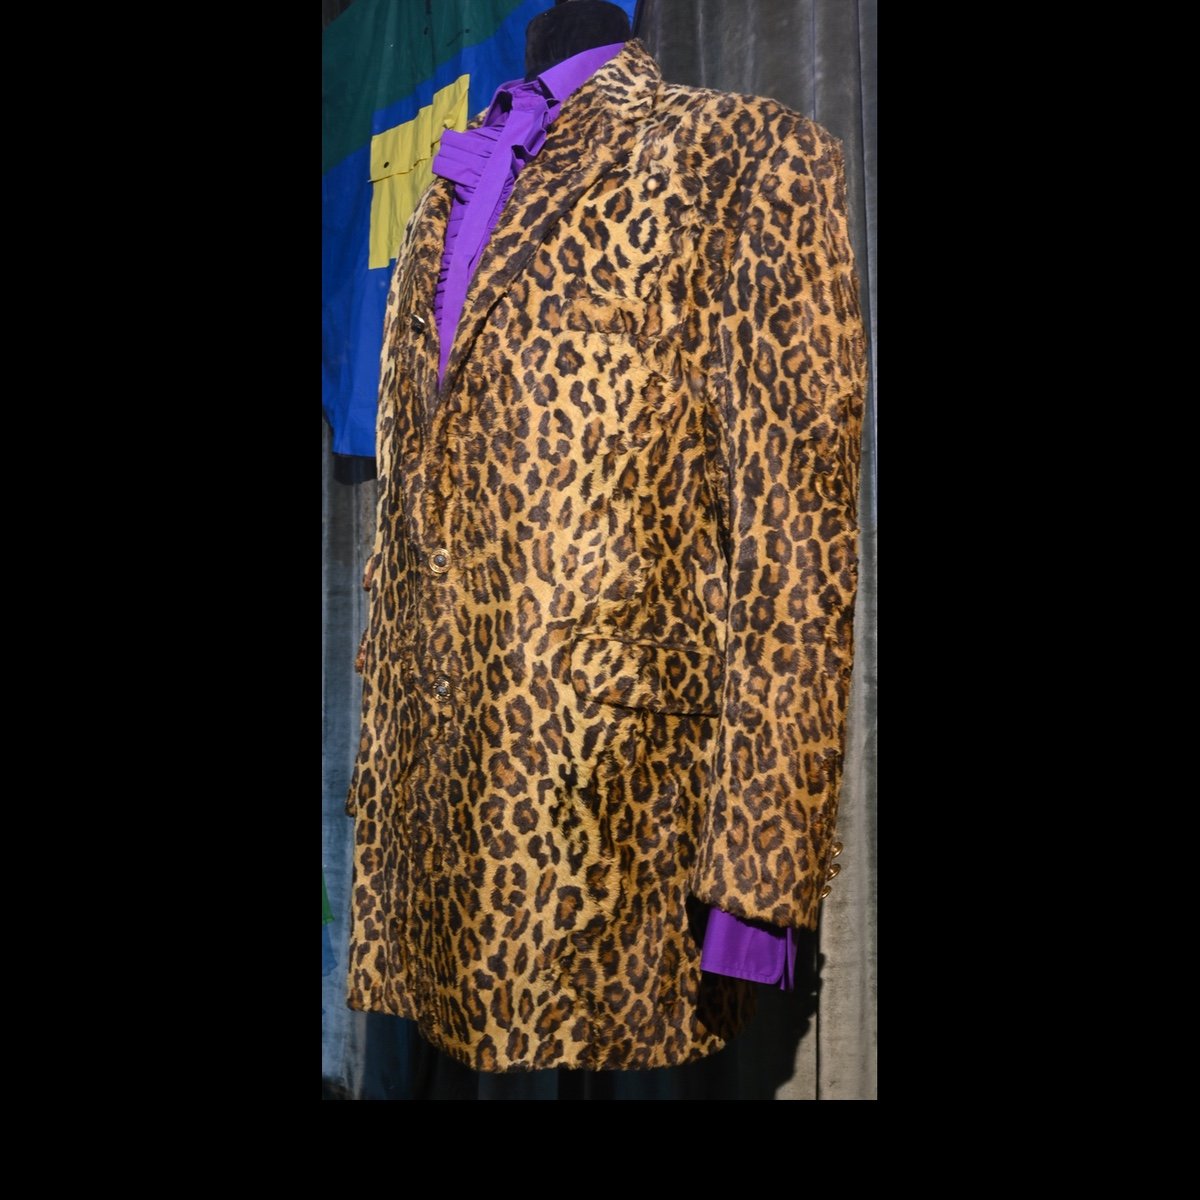 c.1990 Leopard skin print man’s jacket